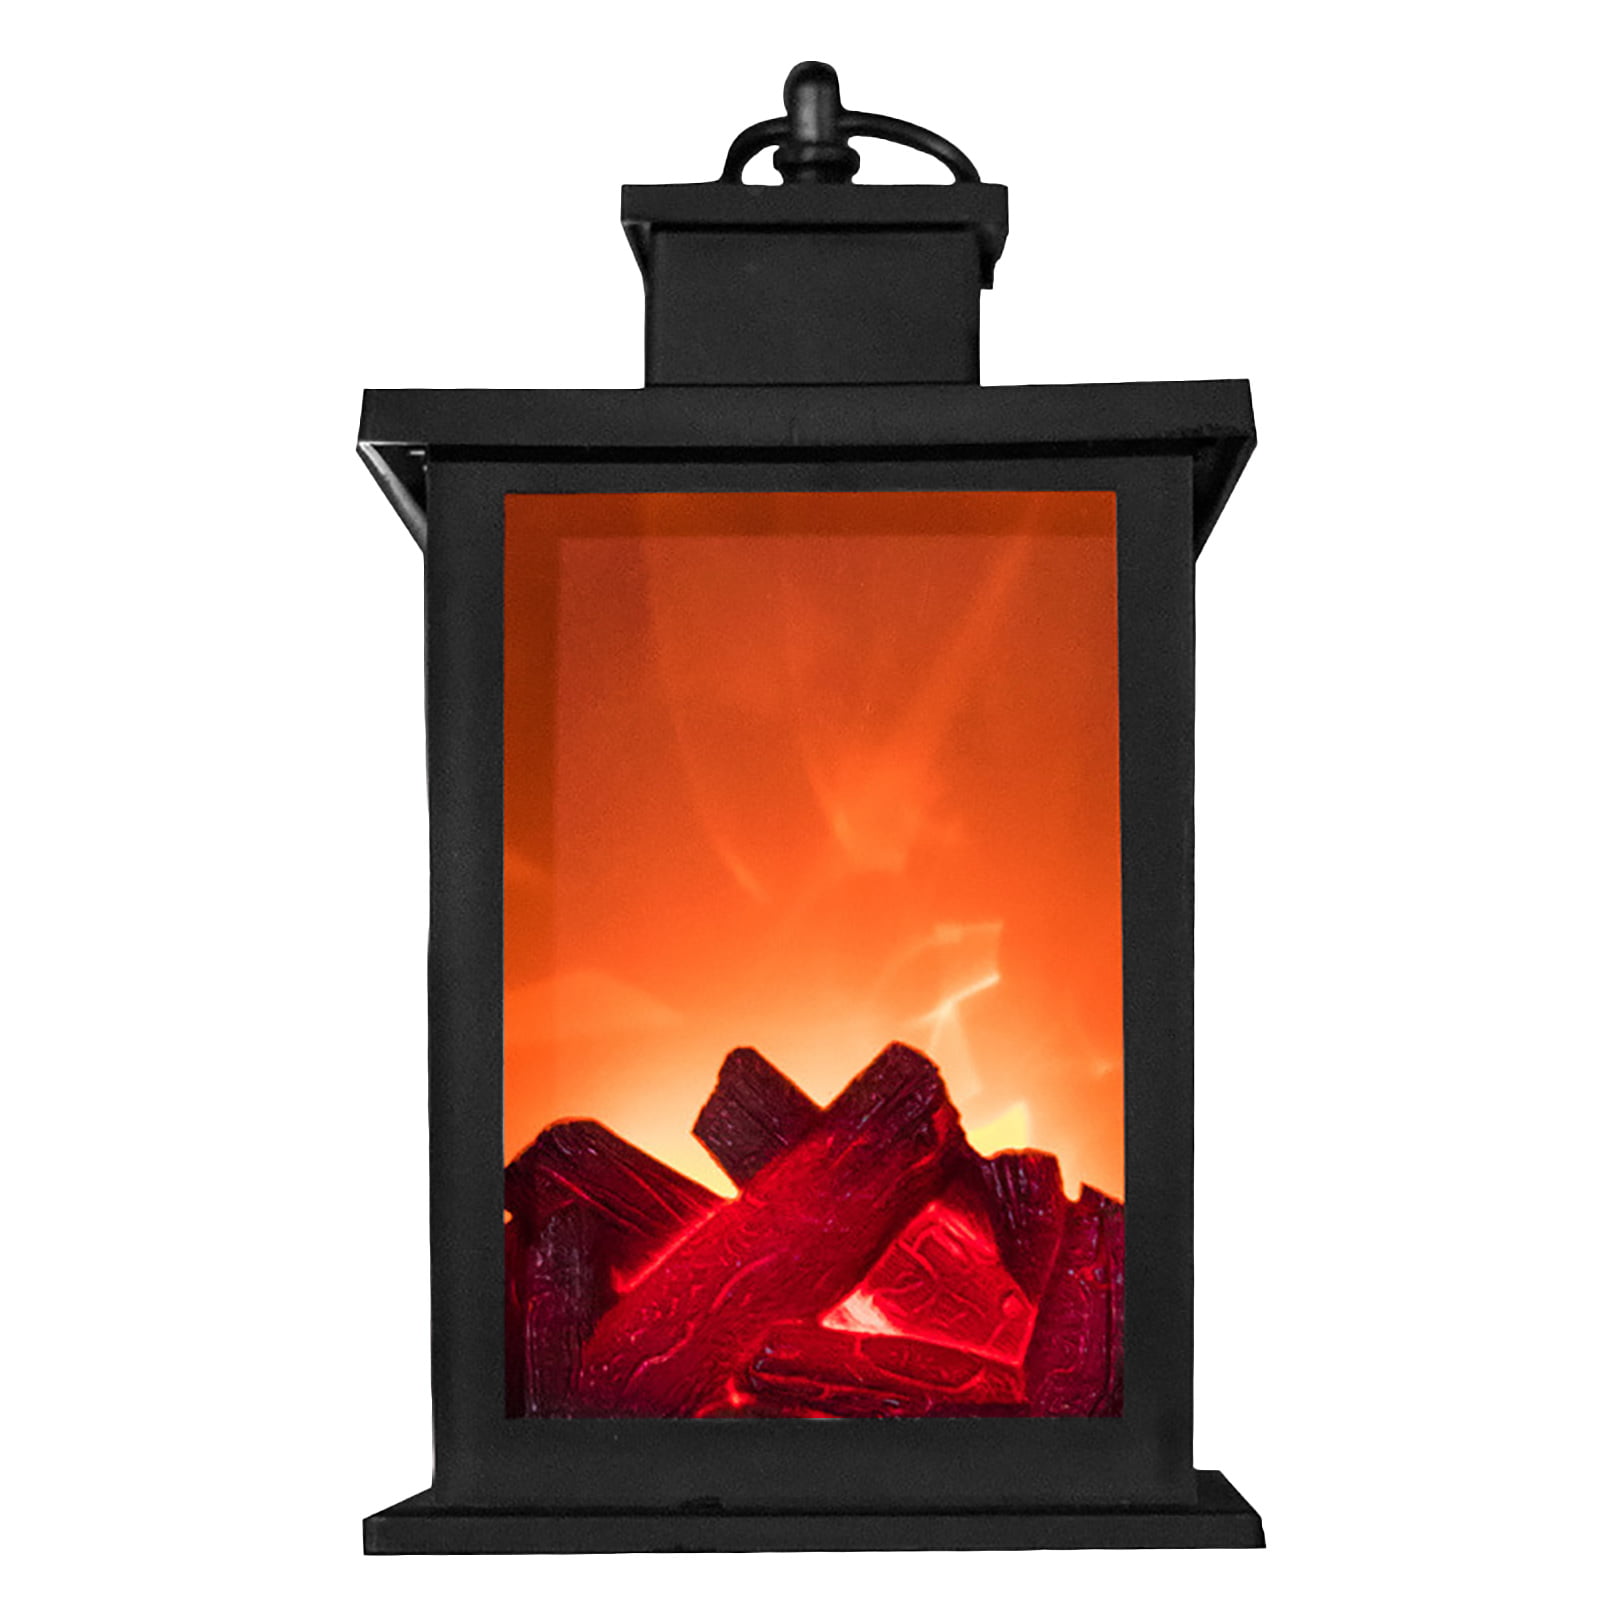 Fireplace Lantern LED Flame Effect Stylish Decorative Home 21cm 